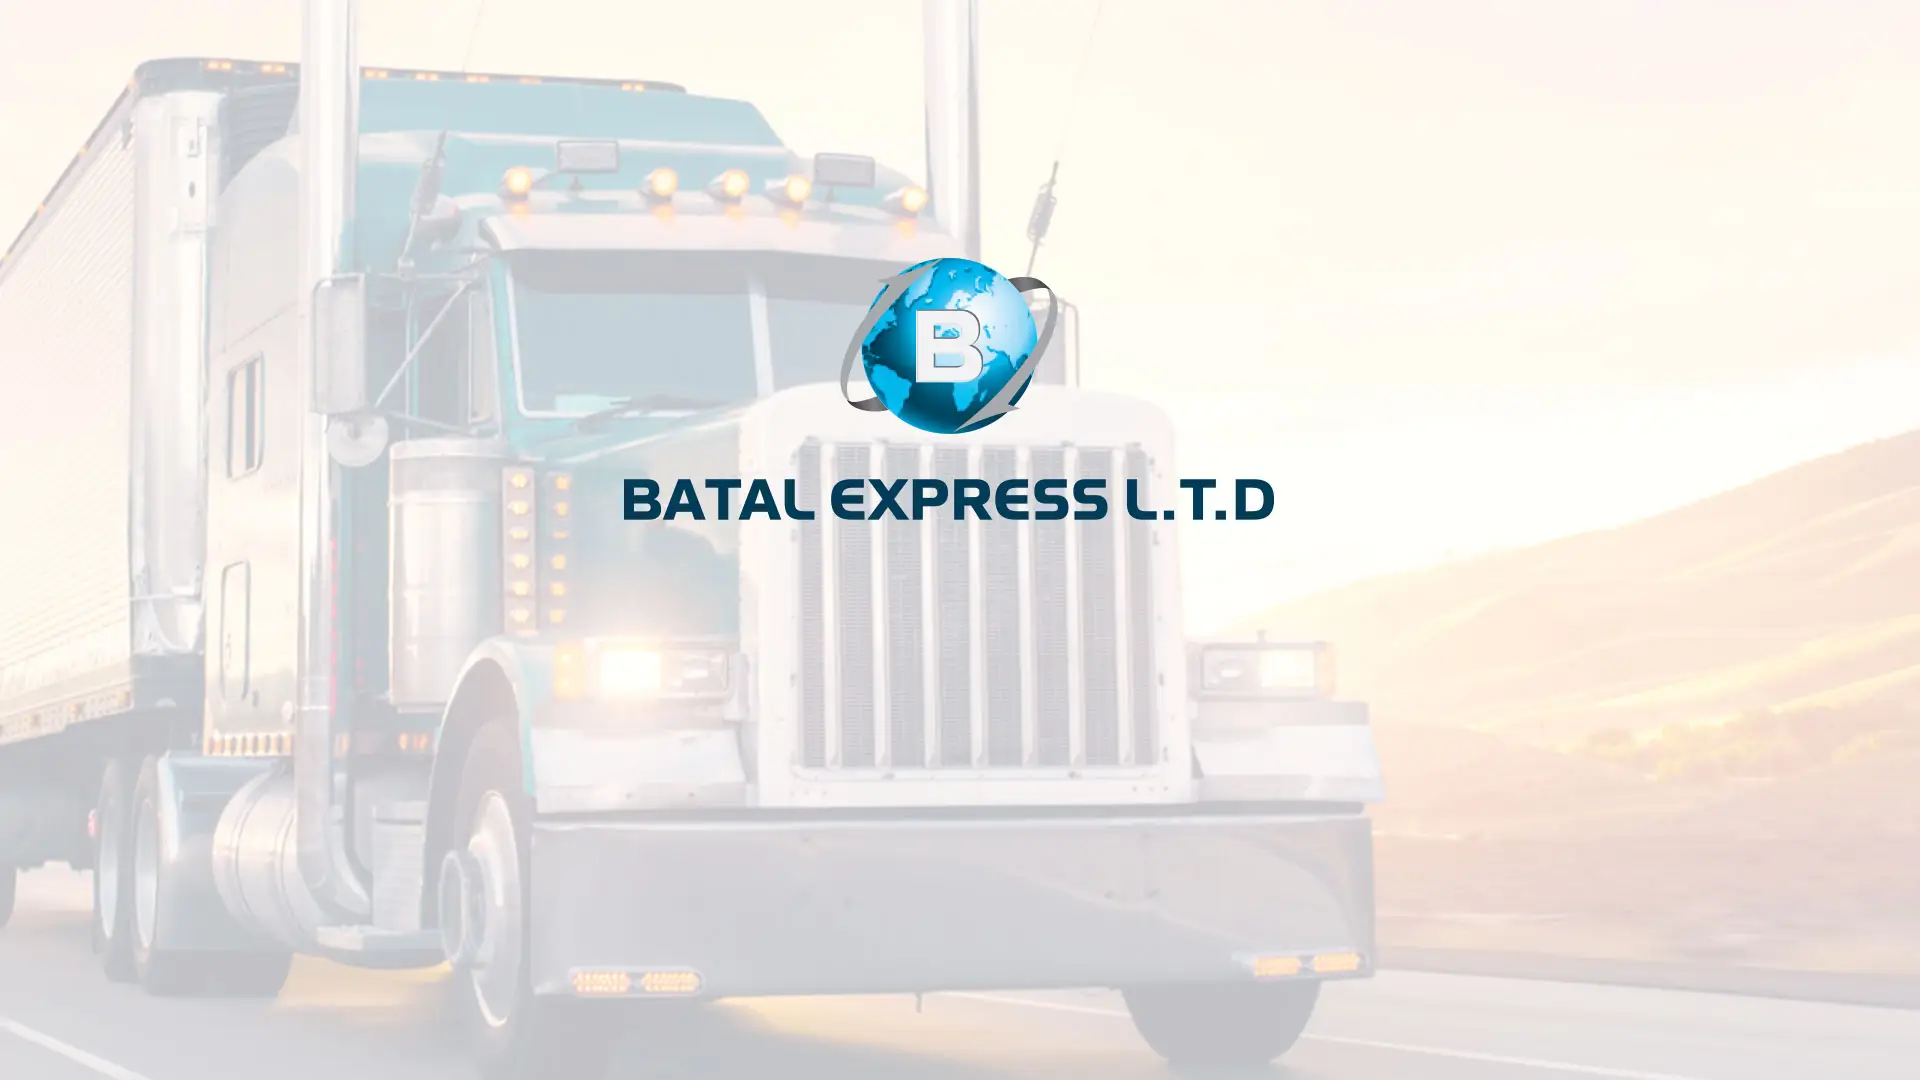 Batal Express